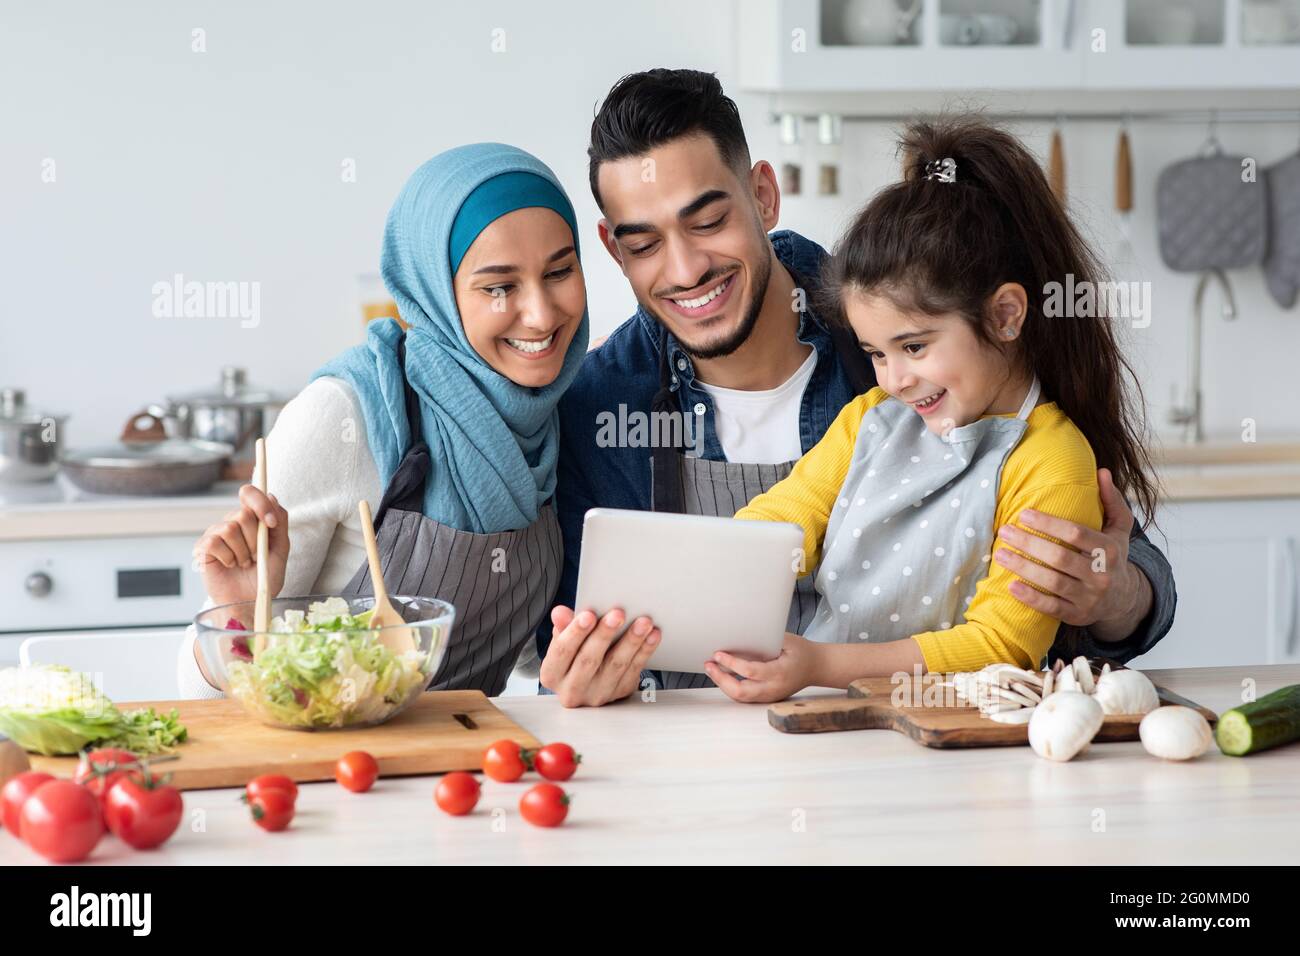 Happy Muslim Family Mit Digitalem Tablet Beim Gemeinsamen Kochen In Der  Küche Stockfotografie - Alamy